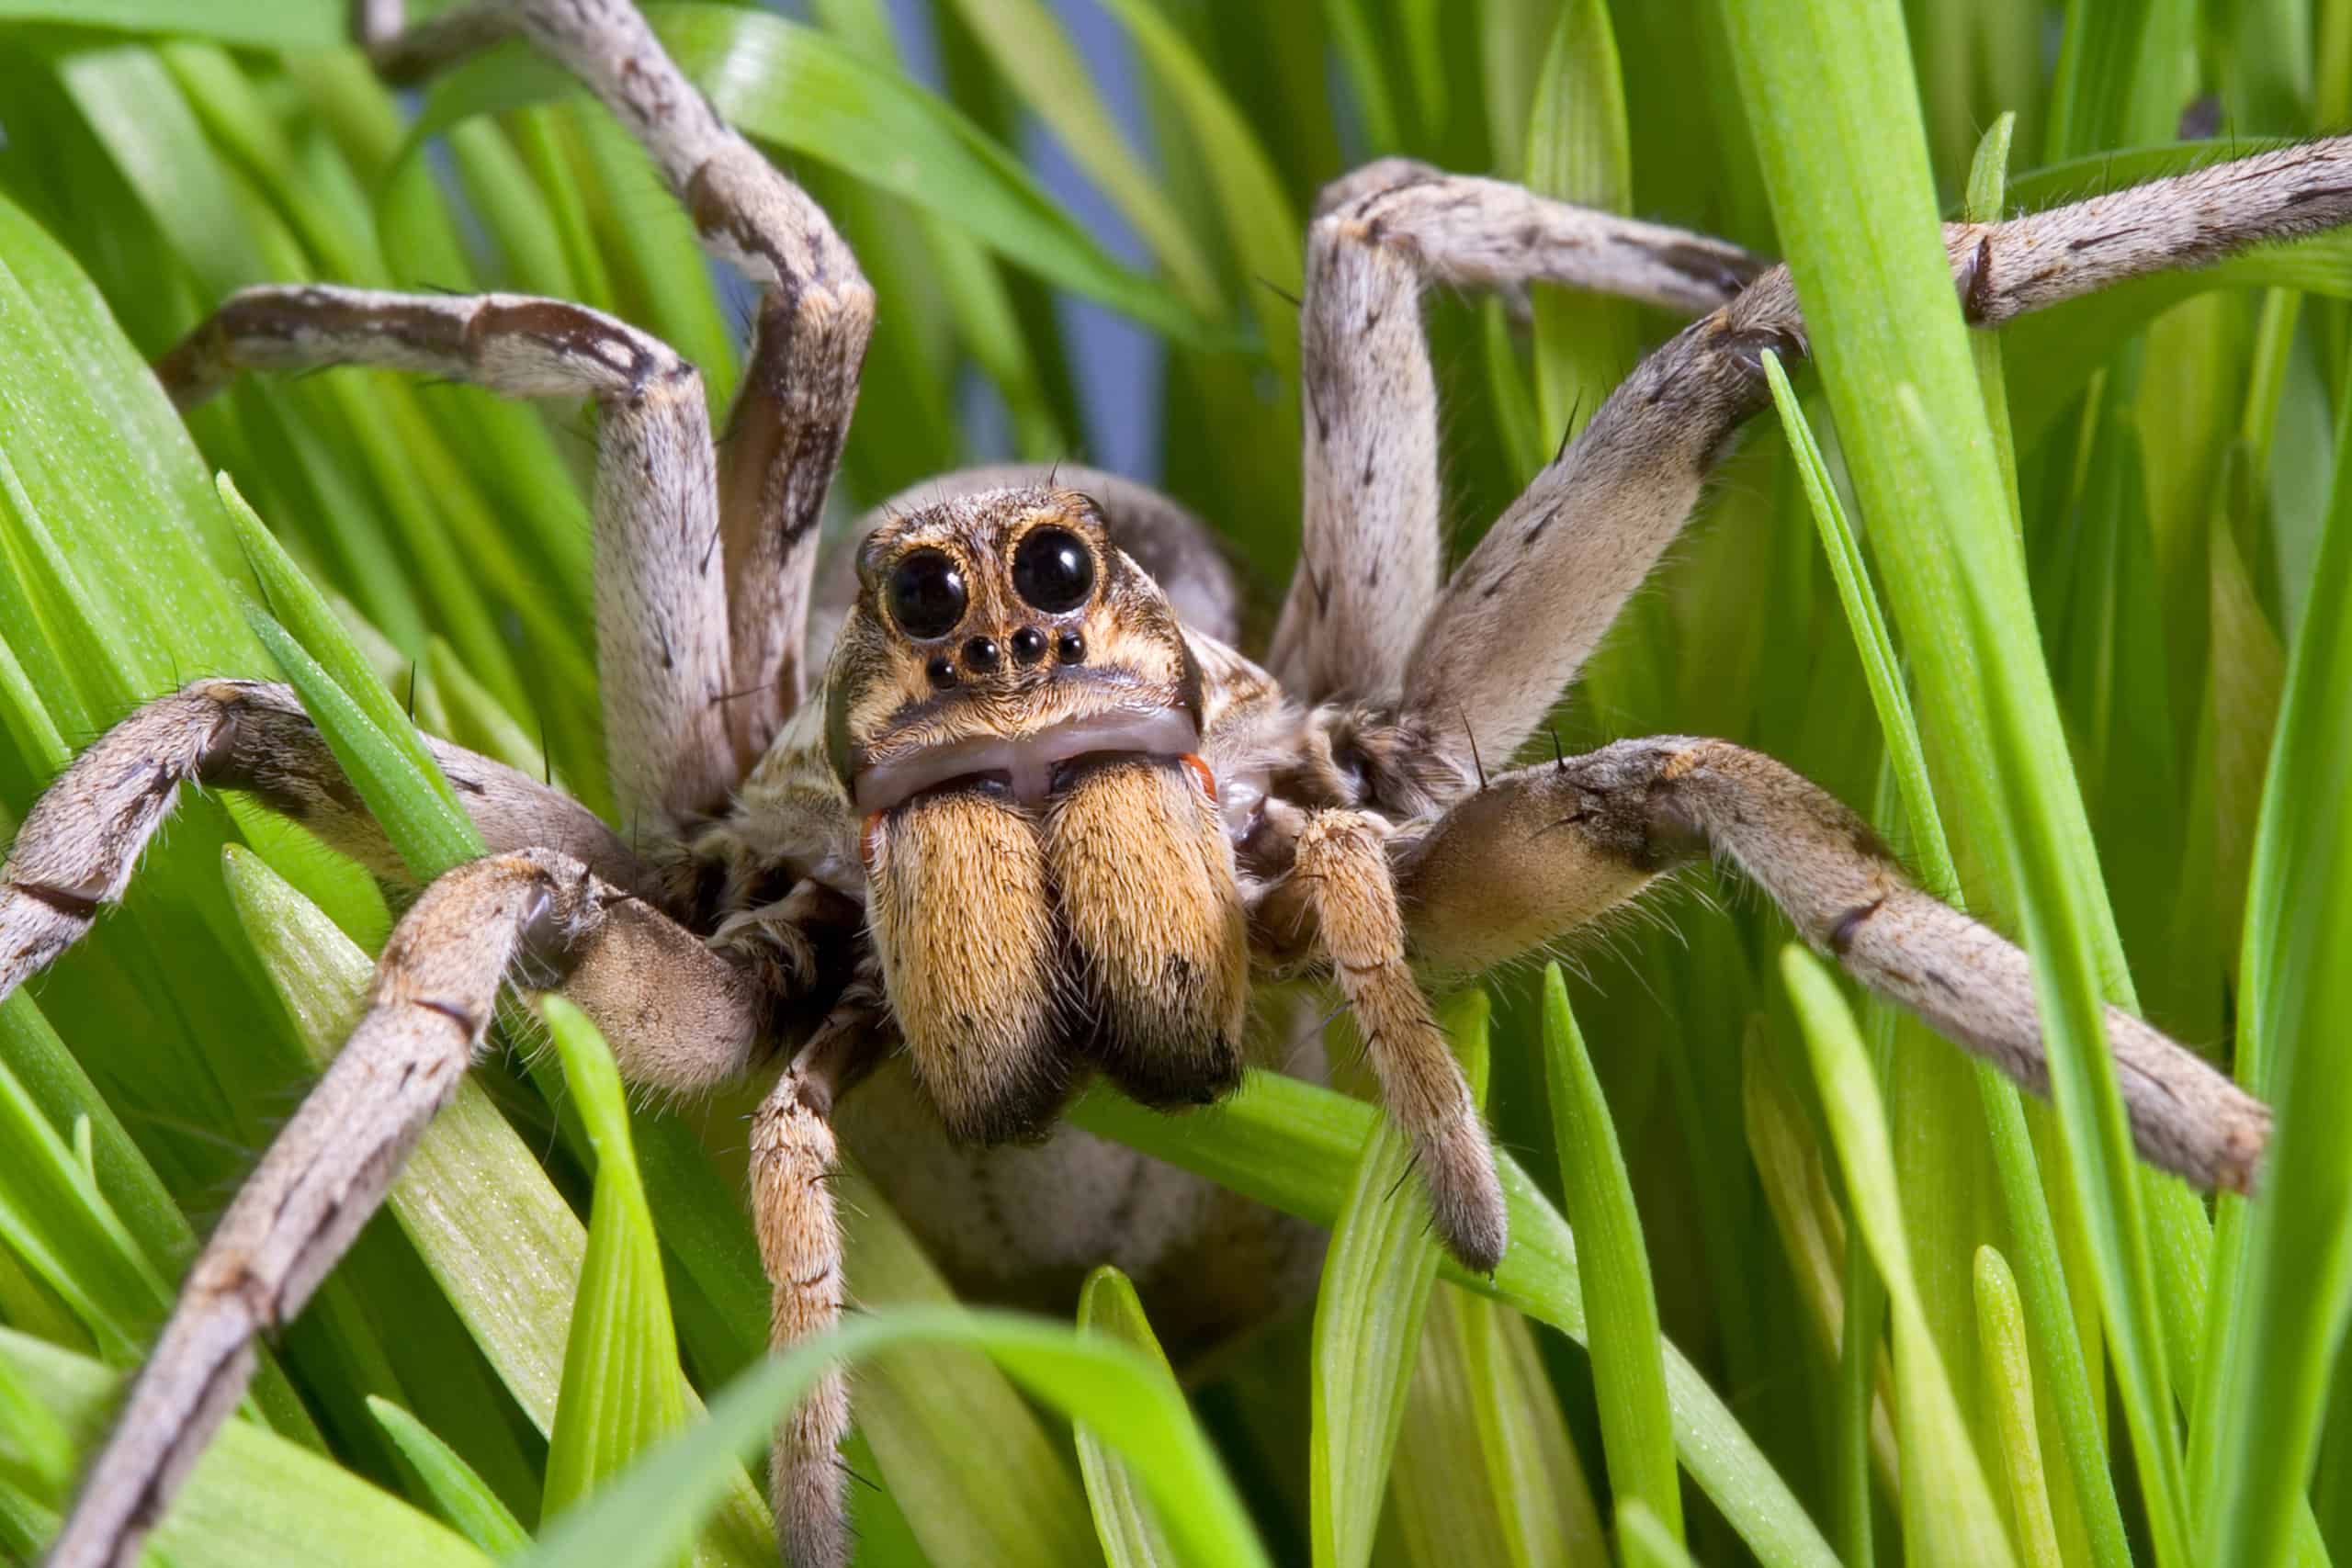 I 6 migliori tipi di ragni da tenere come animali domestici, in classifica
